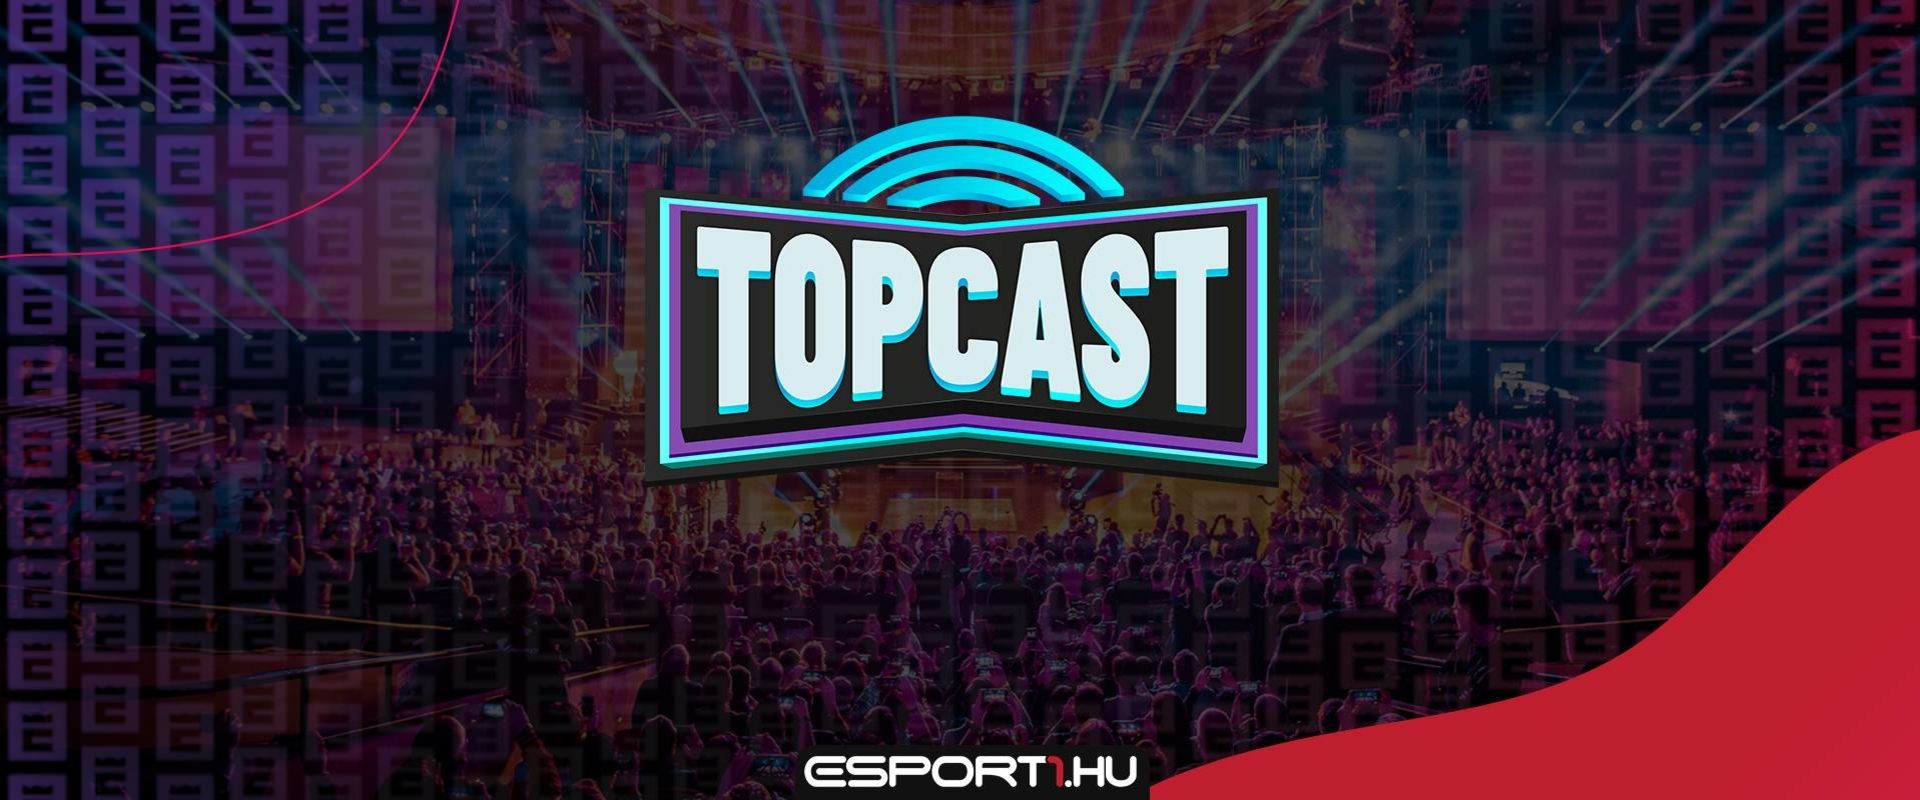 FIFA-tól a Call of Duty-ig - Jön az EsportGuru újabb heti podcastja, a TopCast